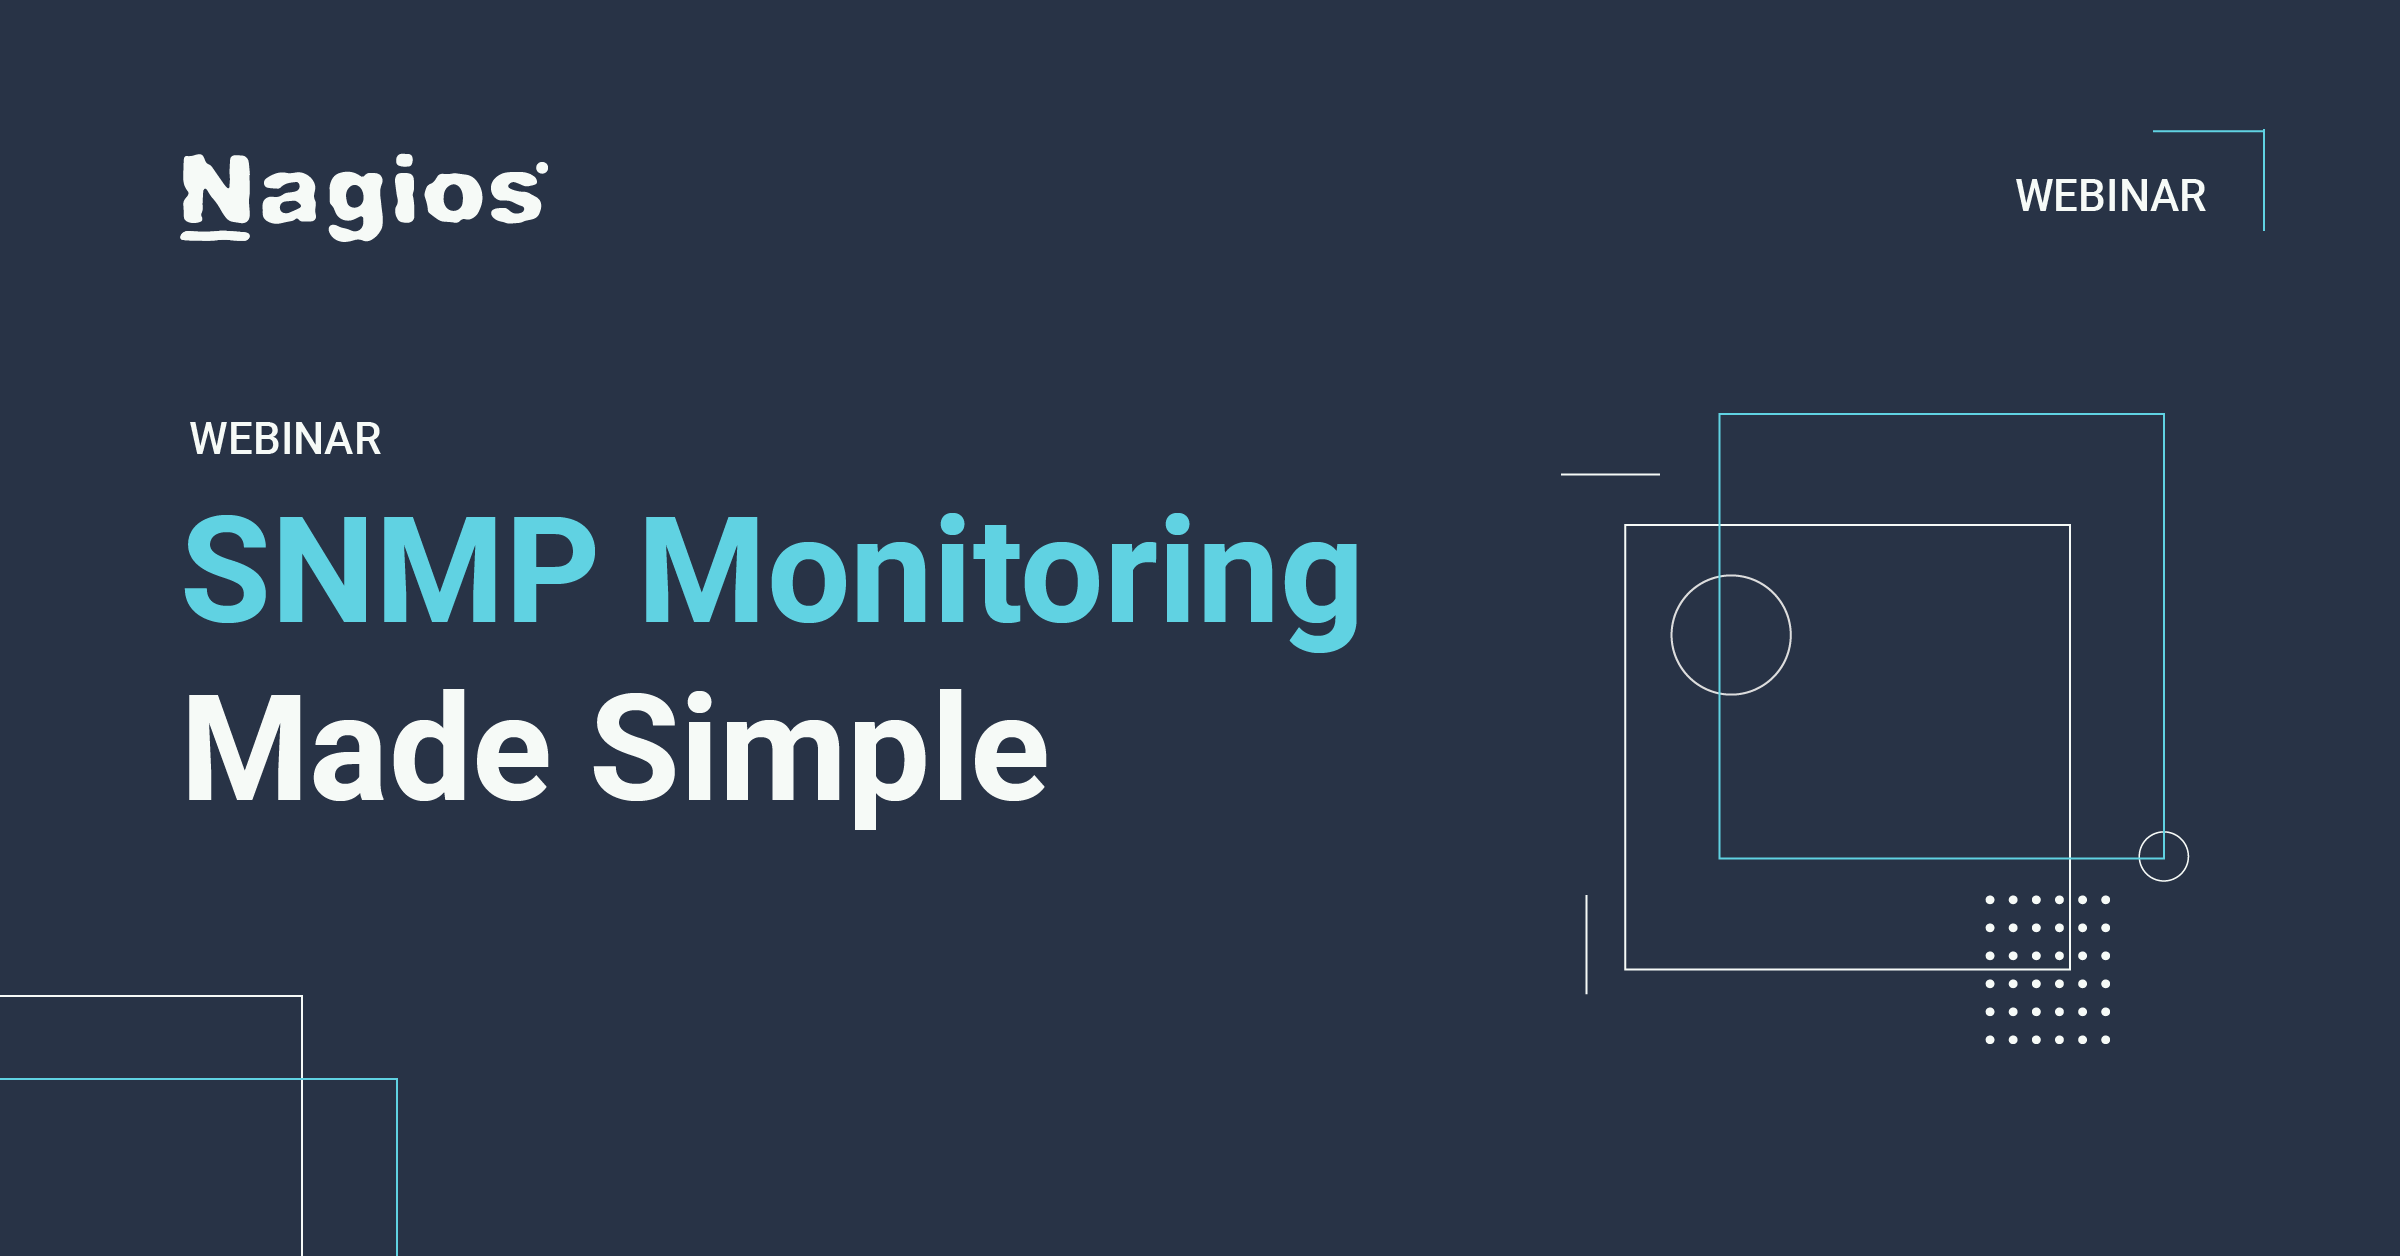 nagios webinars: snmp monitoring made simple